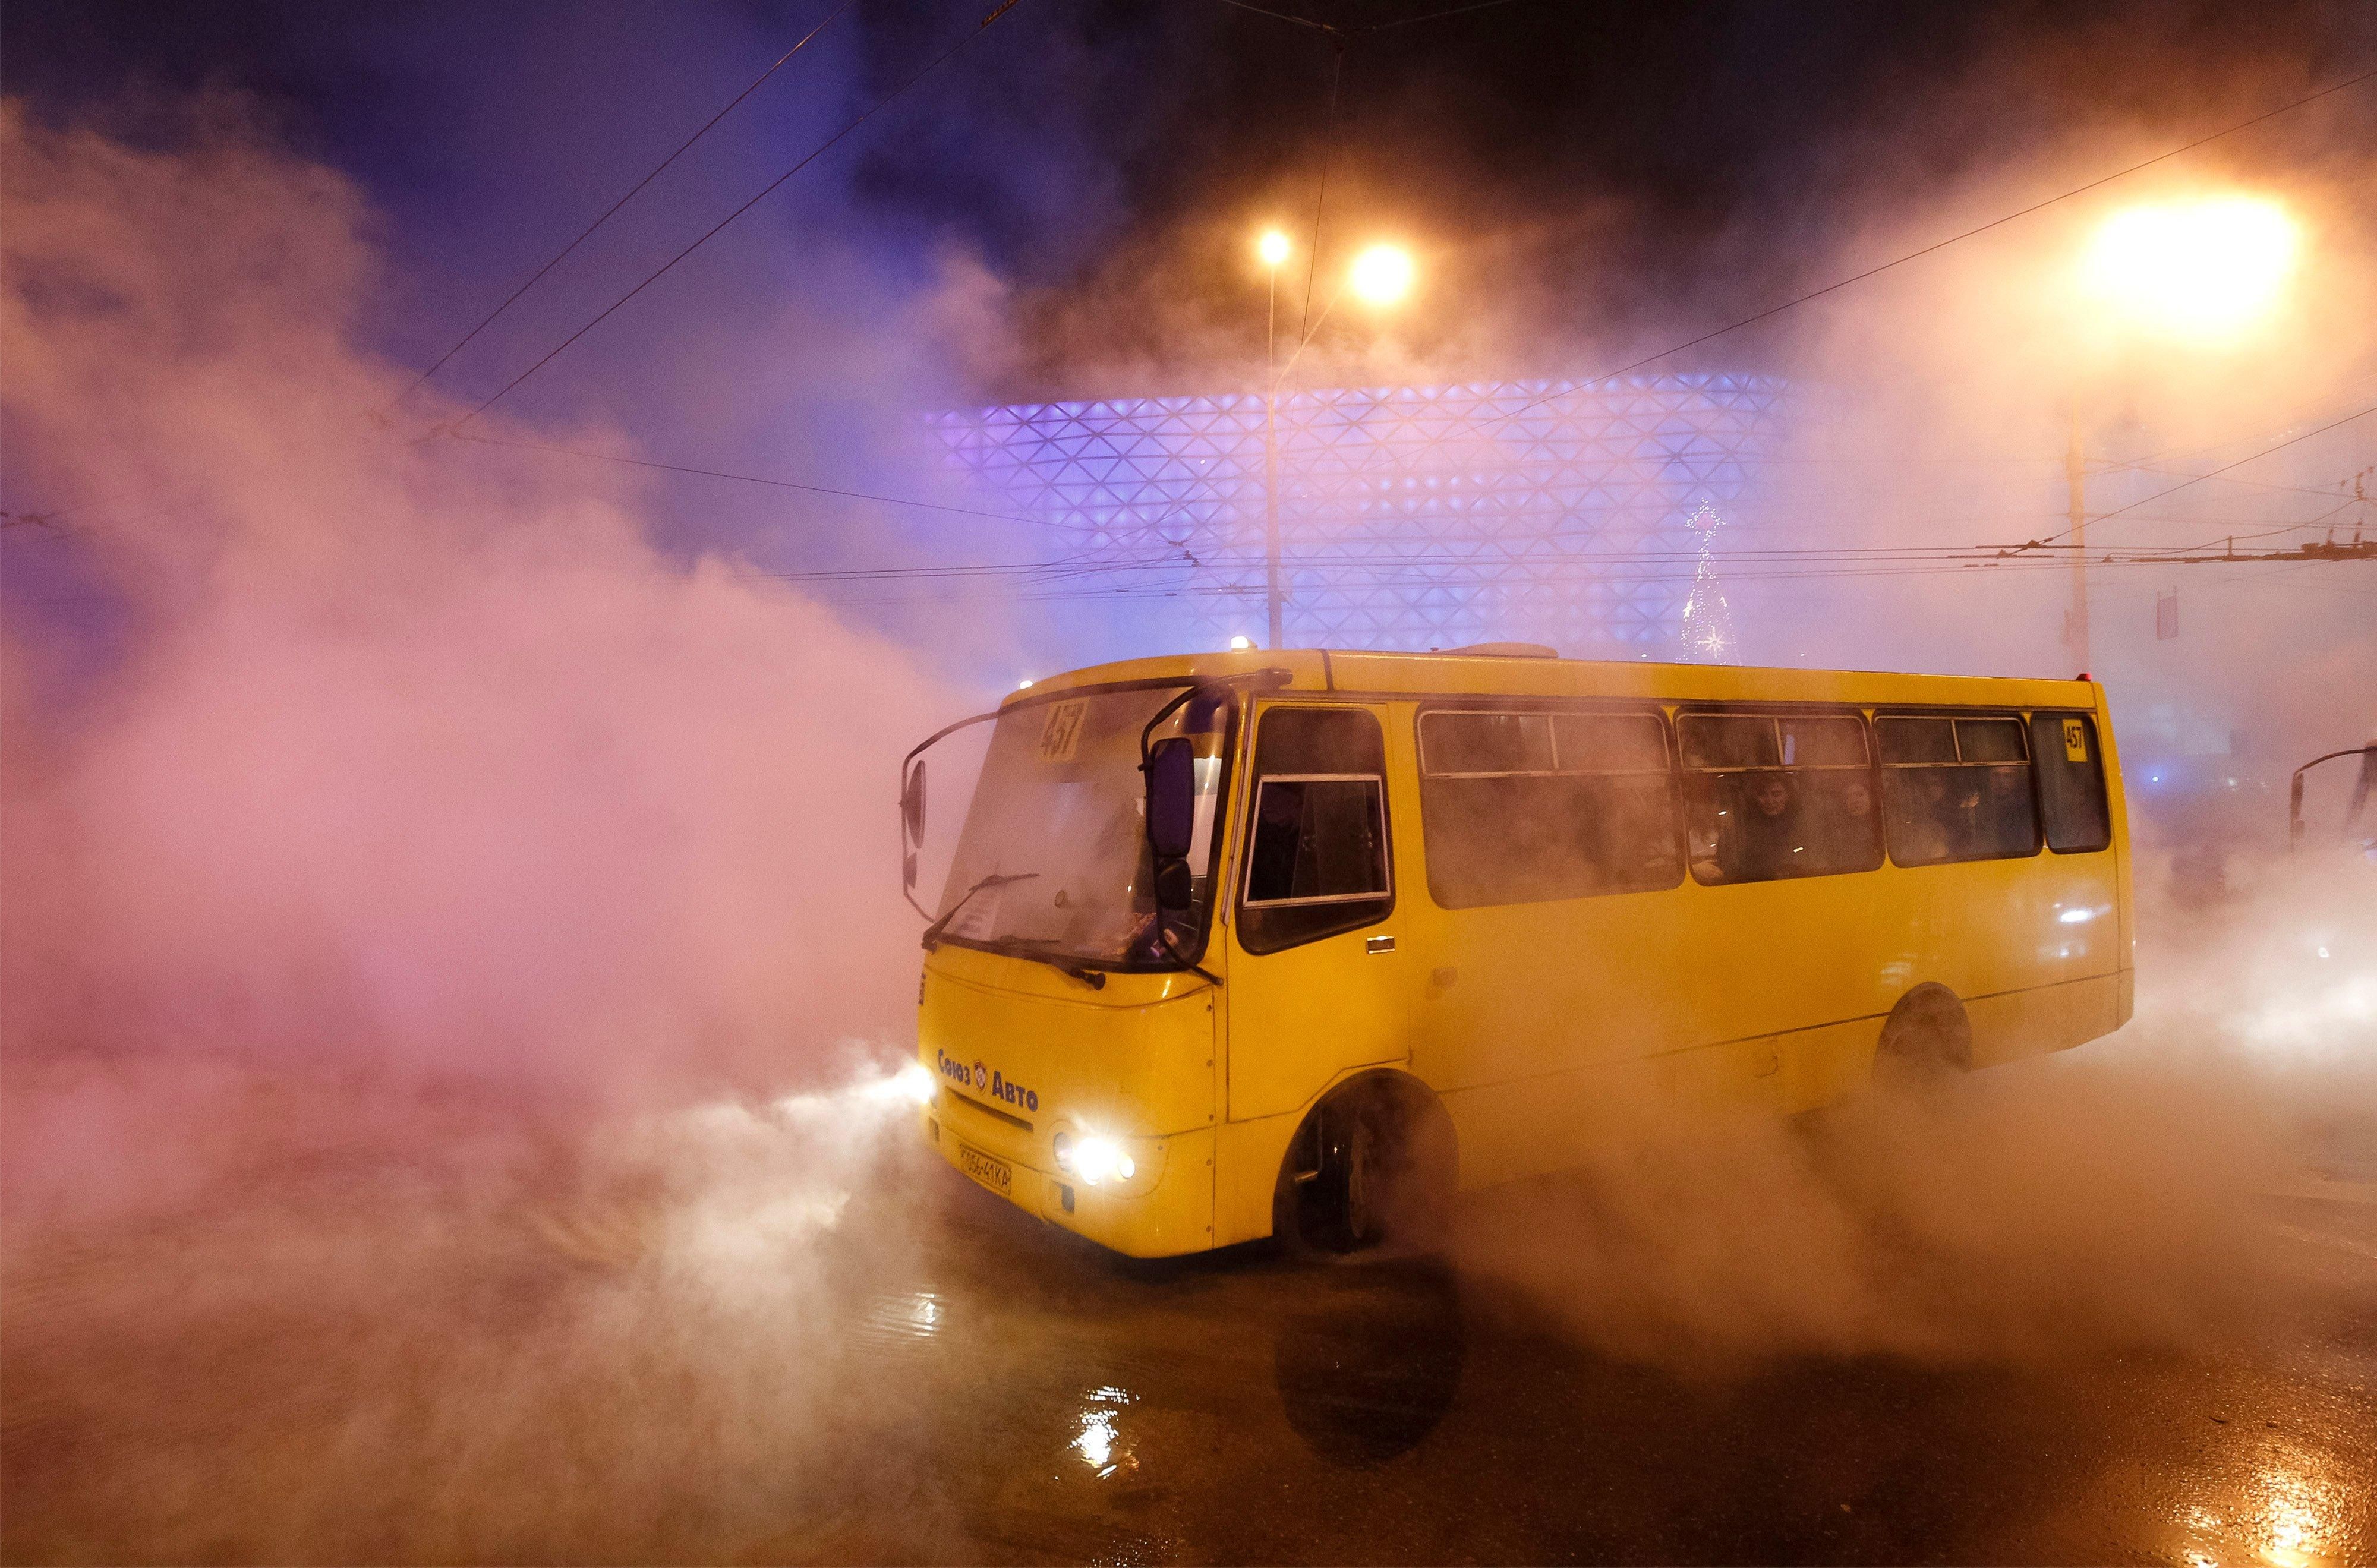 Години очікування та втрачені роботи: у Маріуполі транспортний колапс